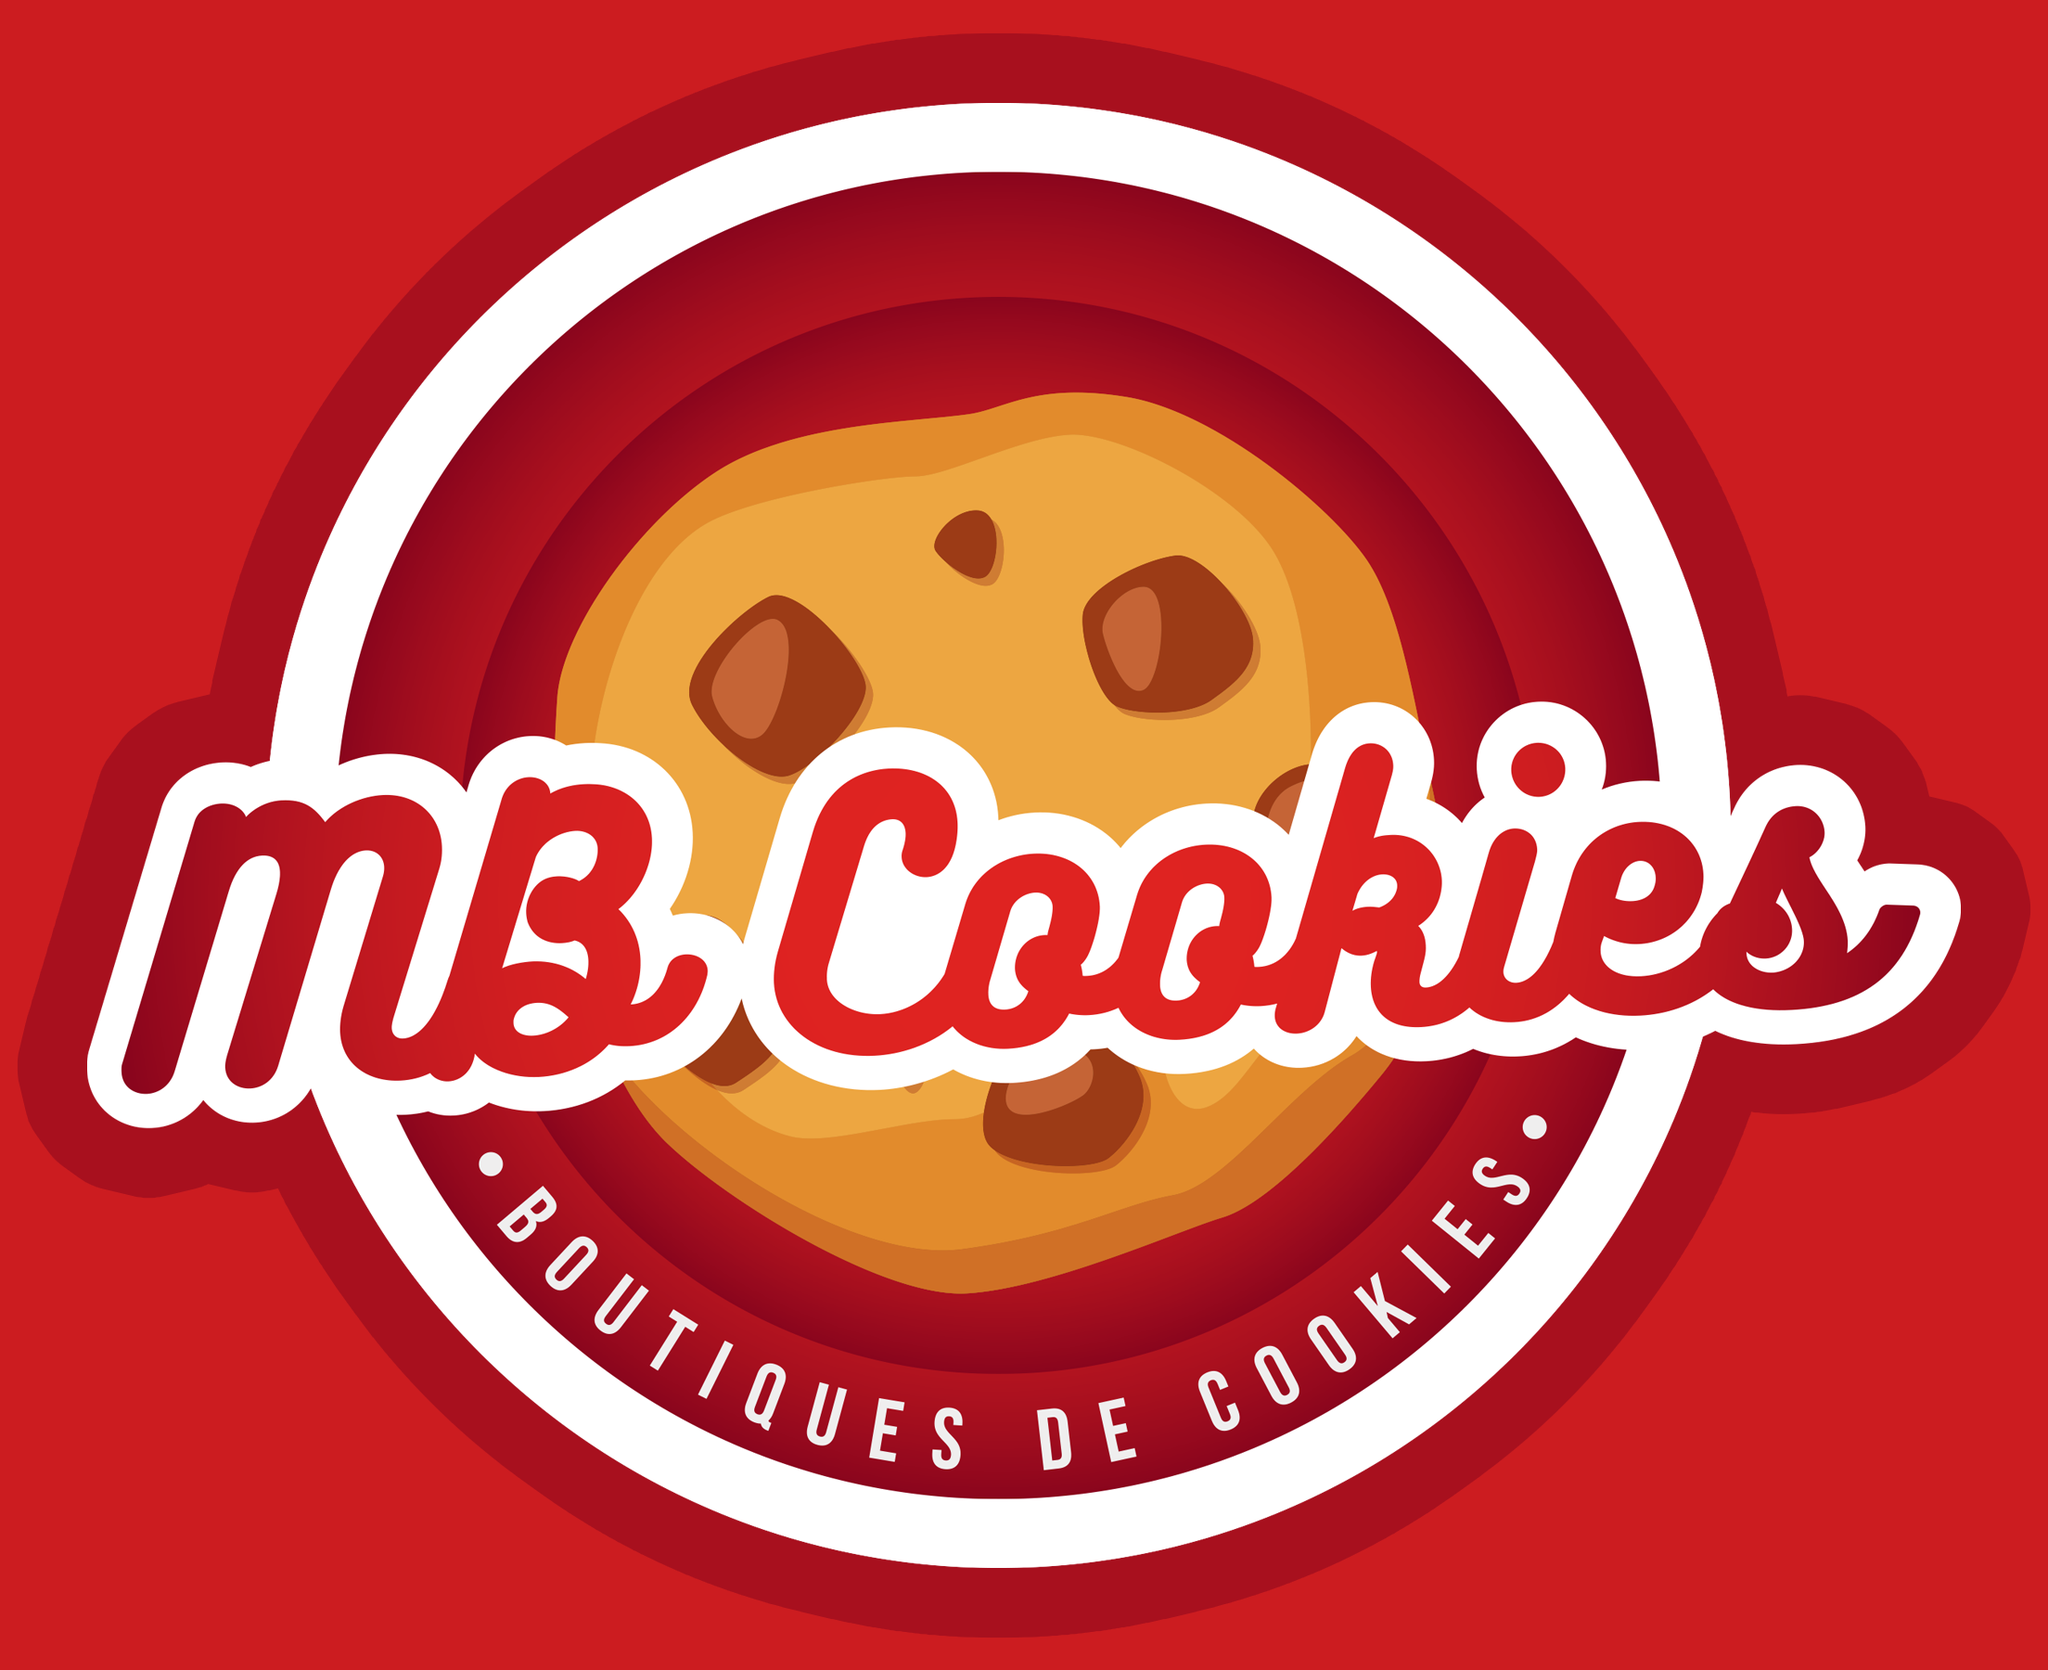 MBcookies